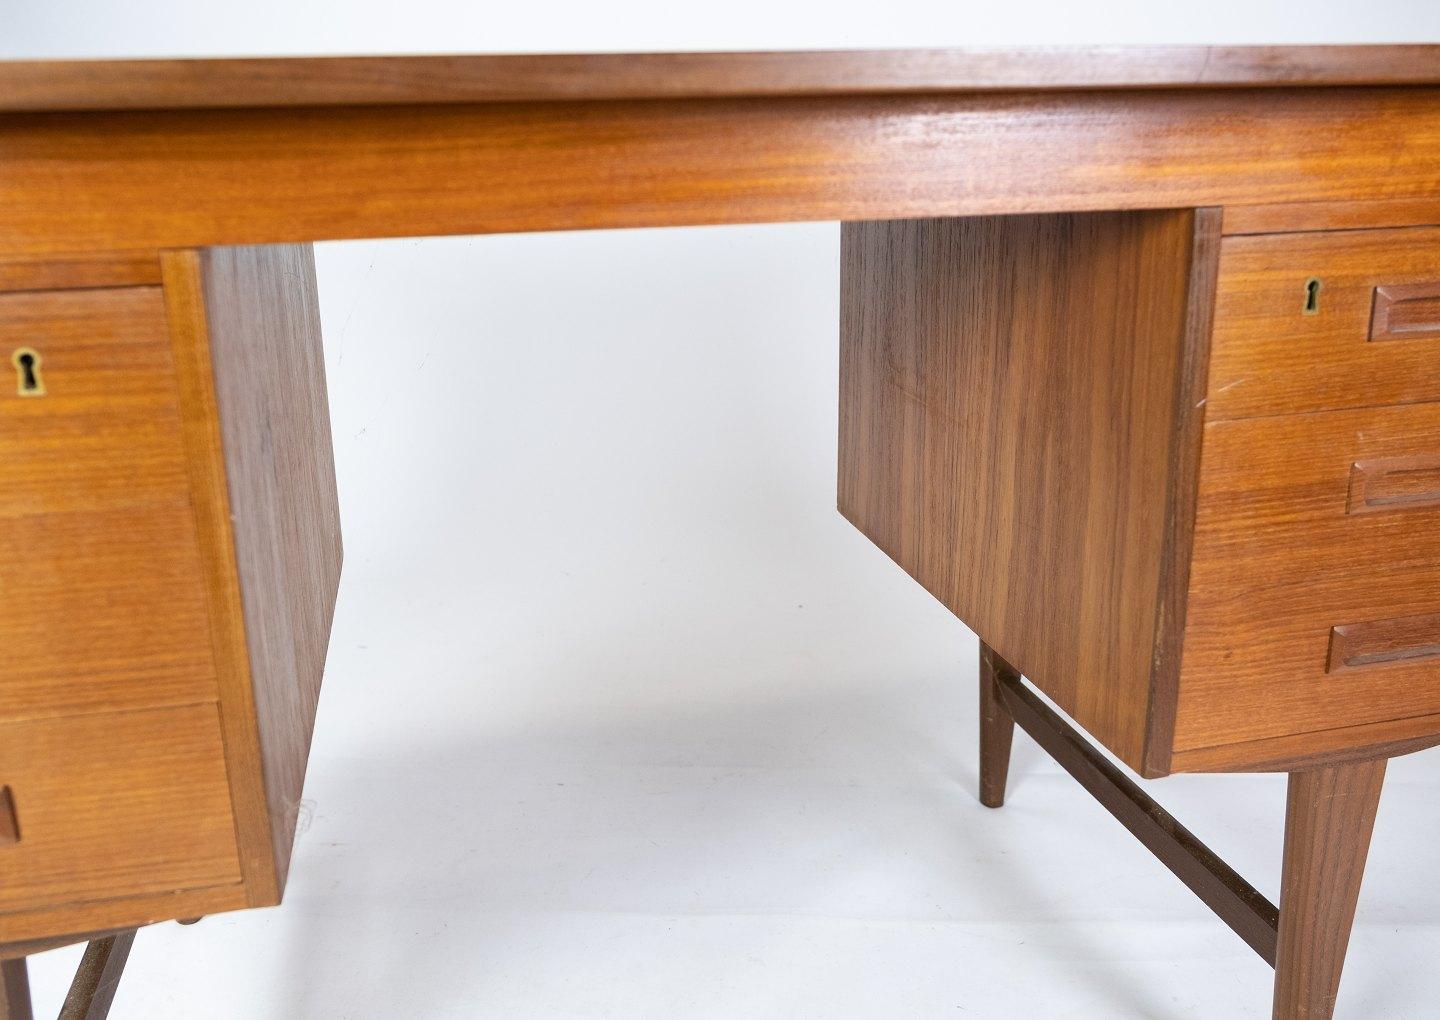 Mid-Century Modern Desk Made In Teak, Danish Design From 1960s For Sale